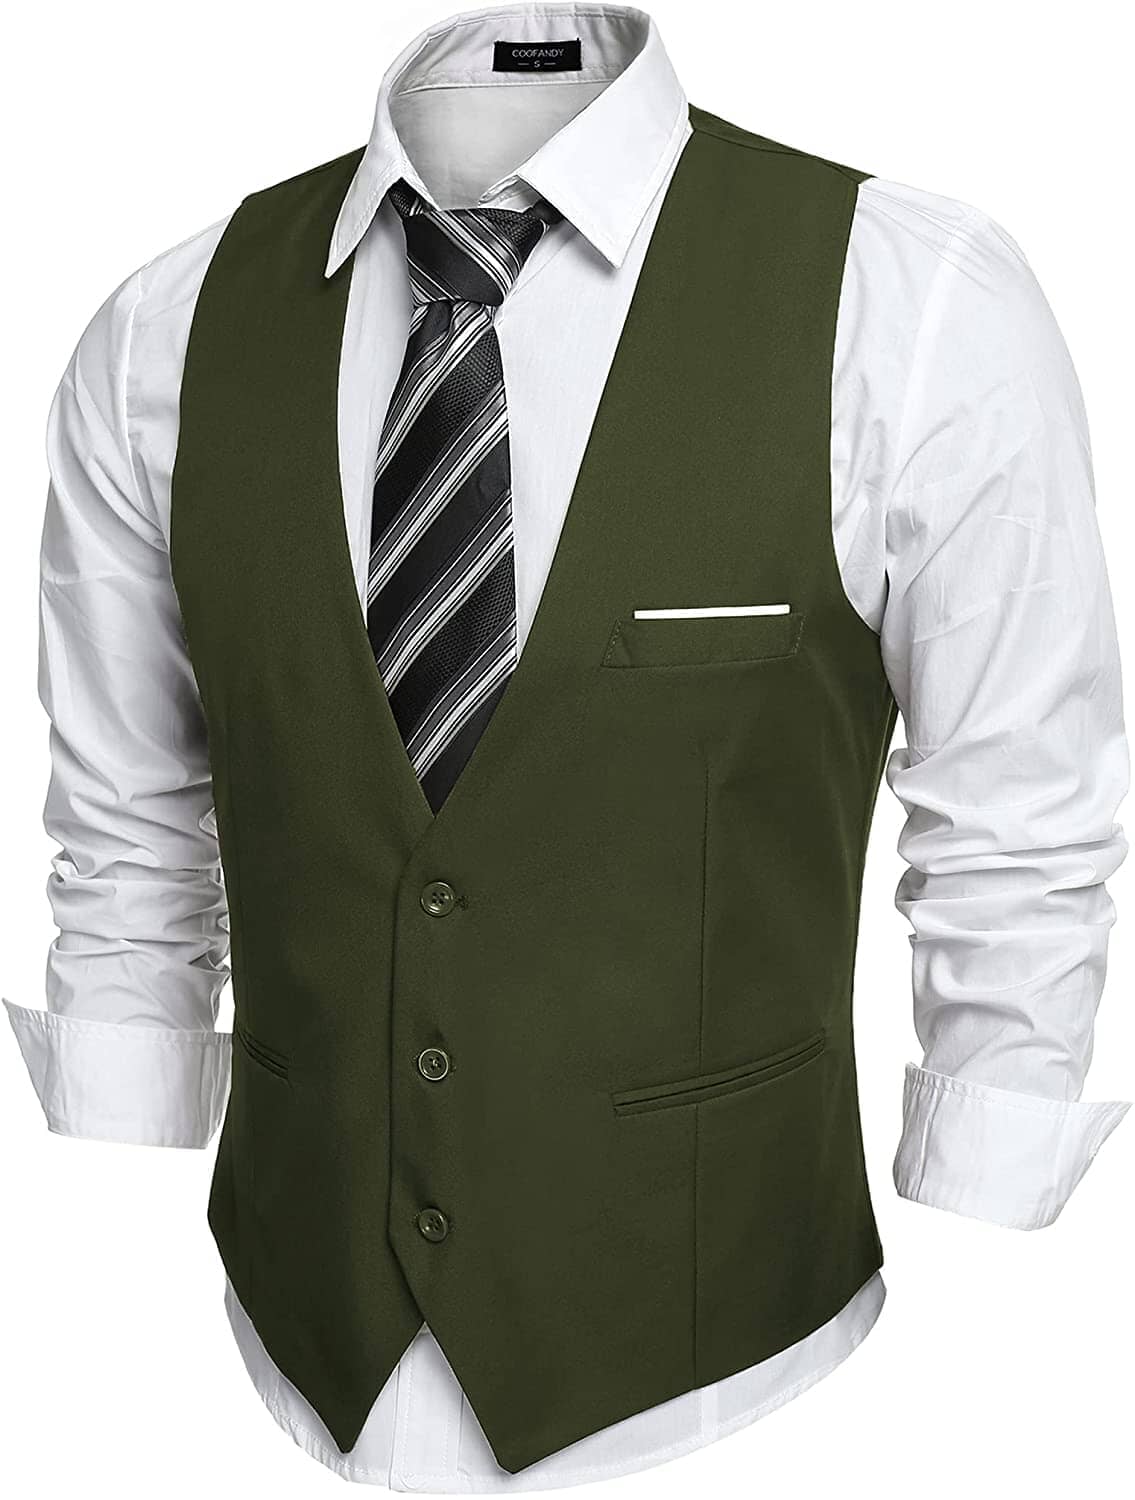 Slim Fit Jacket Vest - High Quality Material | Pockets | Adjustable ...